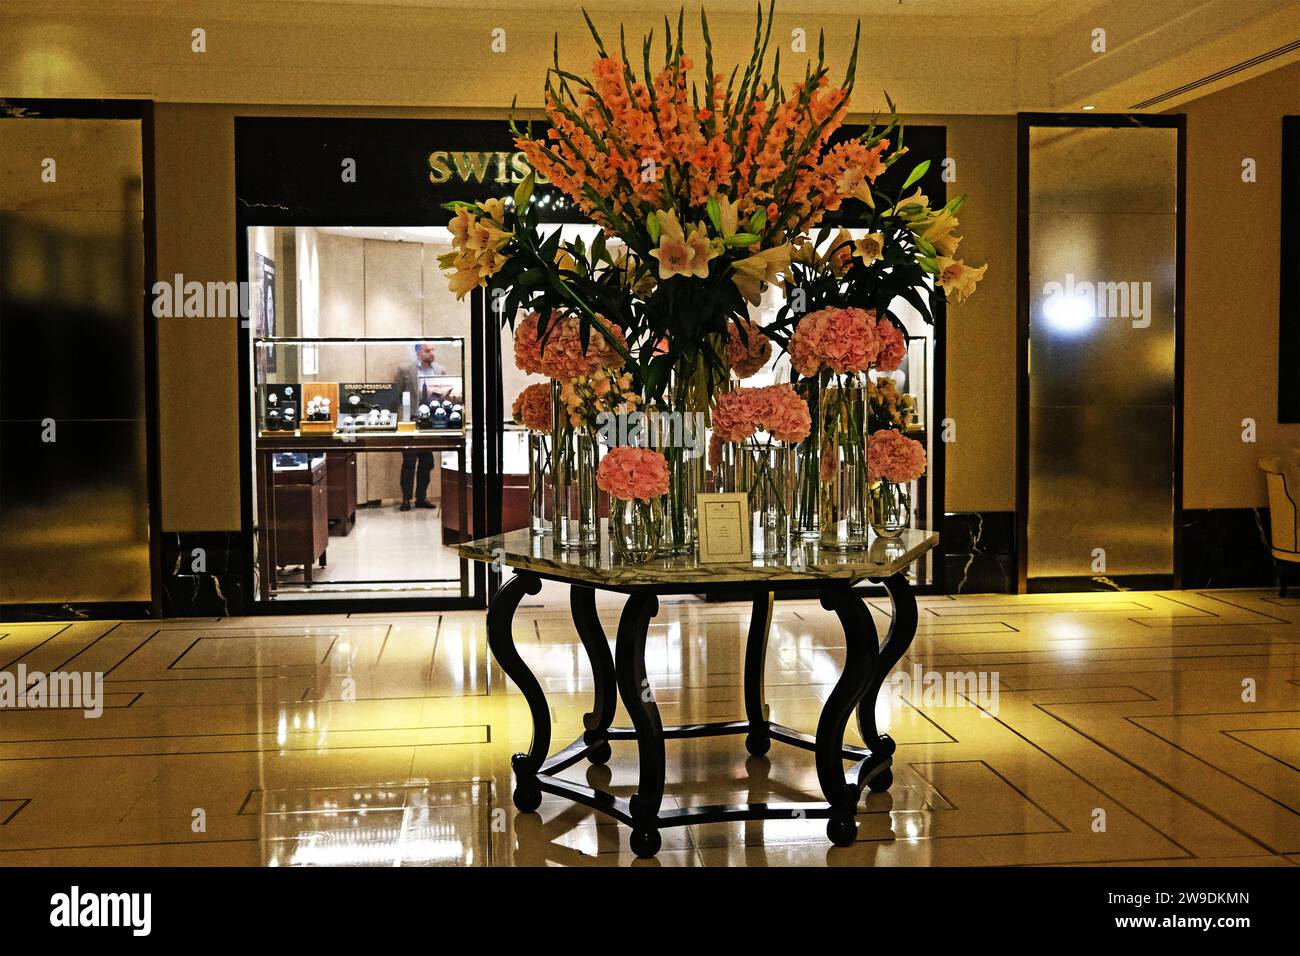 Un elegante vestíbulo del hotel con una suntuosa exhibición floral que incluye hortensias, lilos y gladiolos en varios tonos de rosa con una iluminación ambiental suave Foto de stock